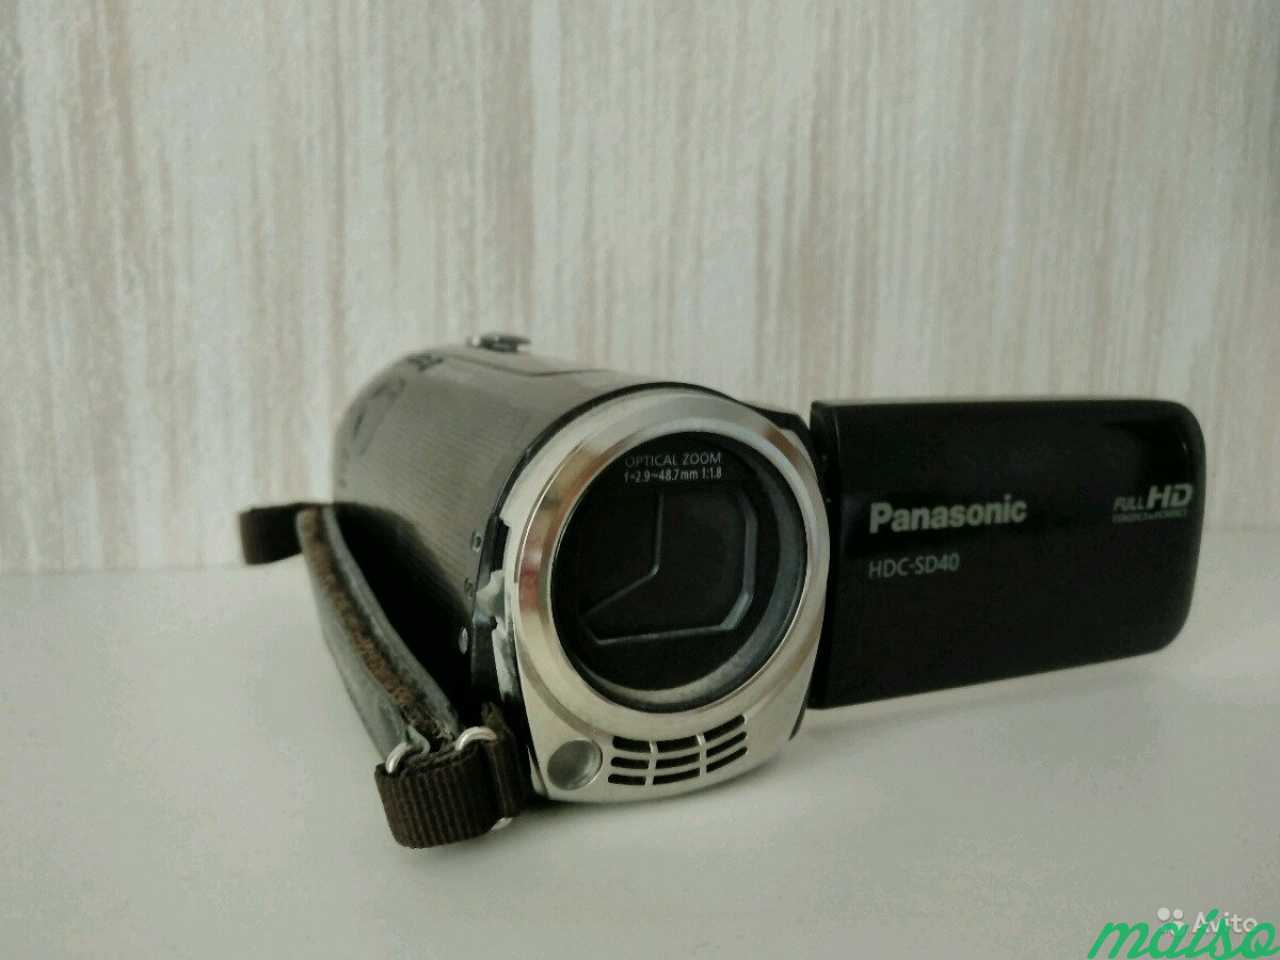 Видеокамера Panasonic hds sd40 в Санкт-Петербурге. Фото 1